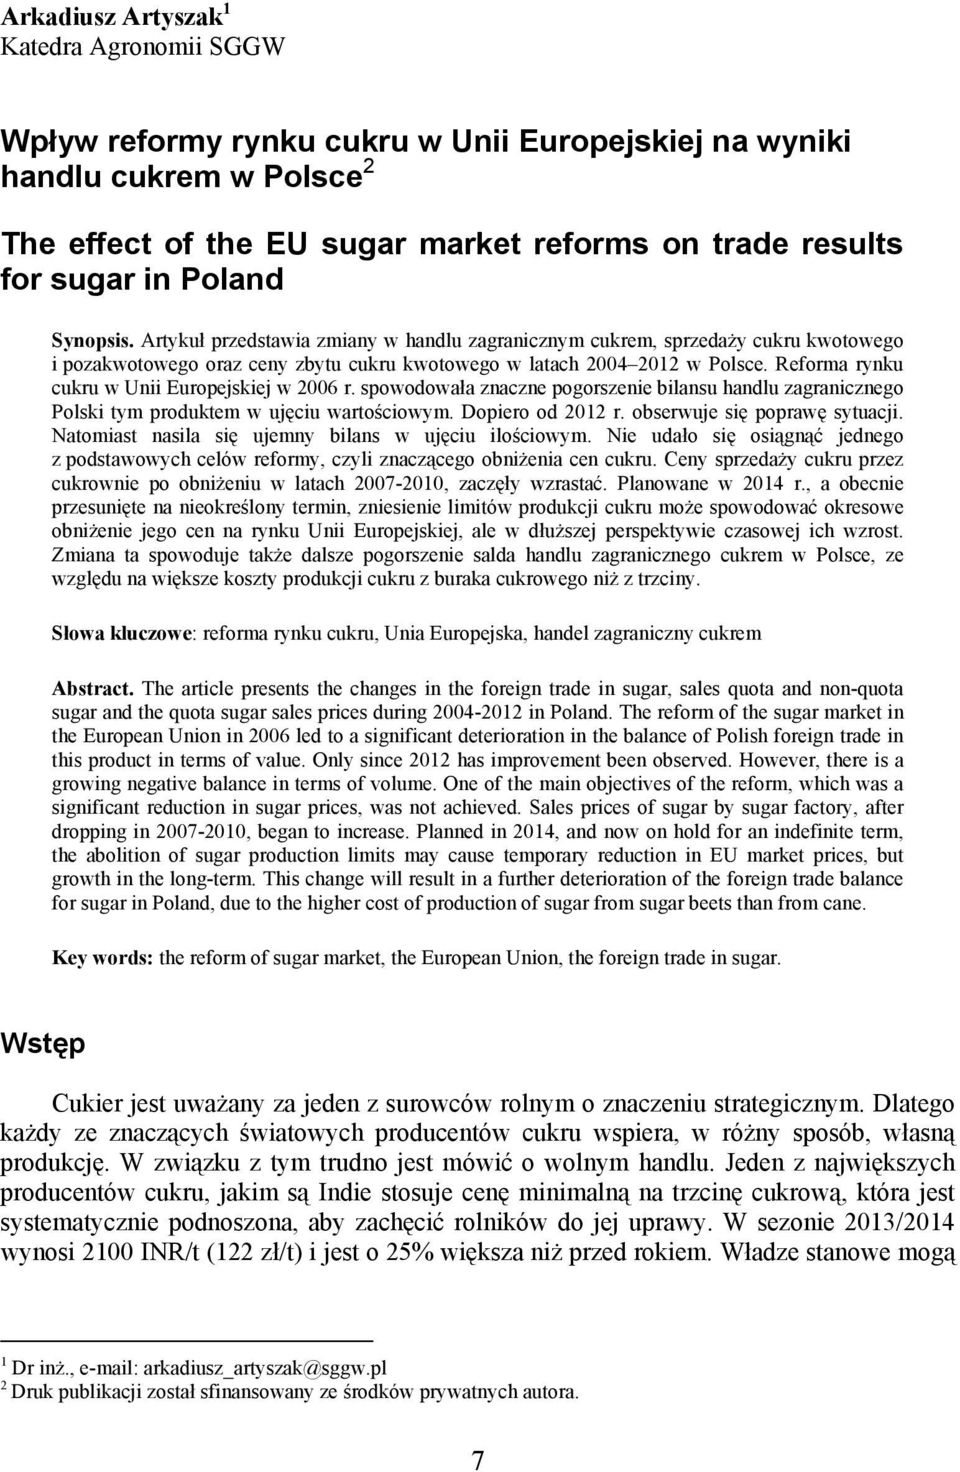 Reforma rynku cukru w Unii Europejskiej w 2006 r. spowodowała znaczne pogorszenie bilansu handlu zagranicznego Polski tym produktem w ujęciu wartościowym. Dopiero od 2012 r.